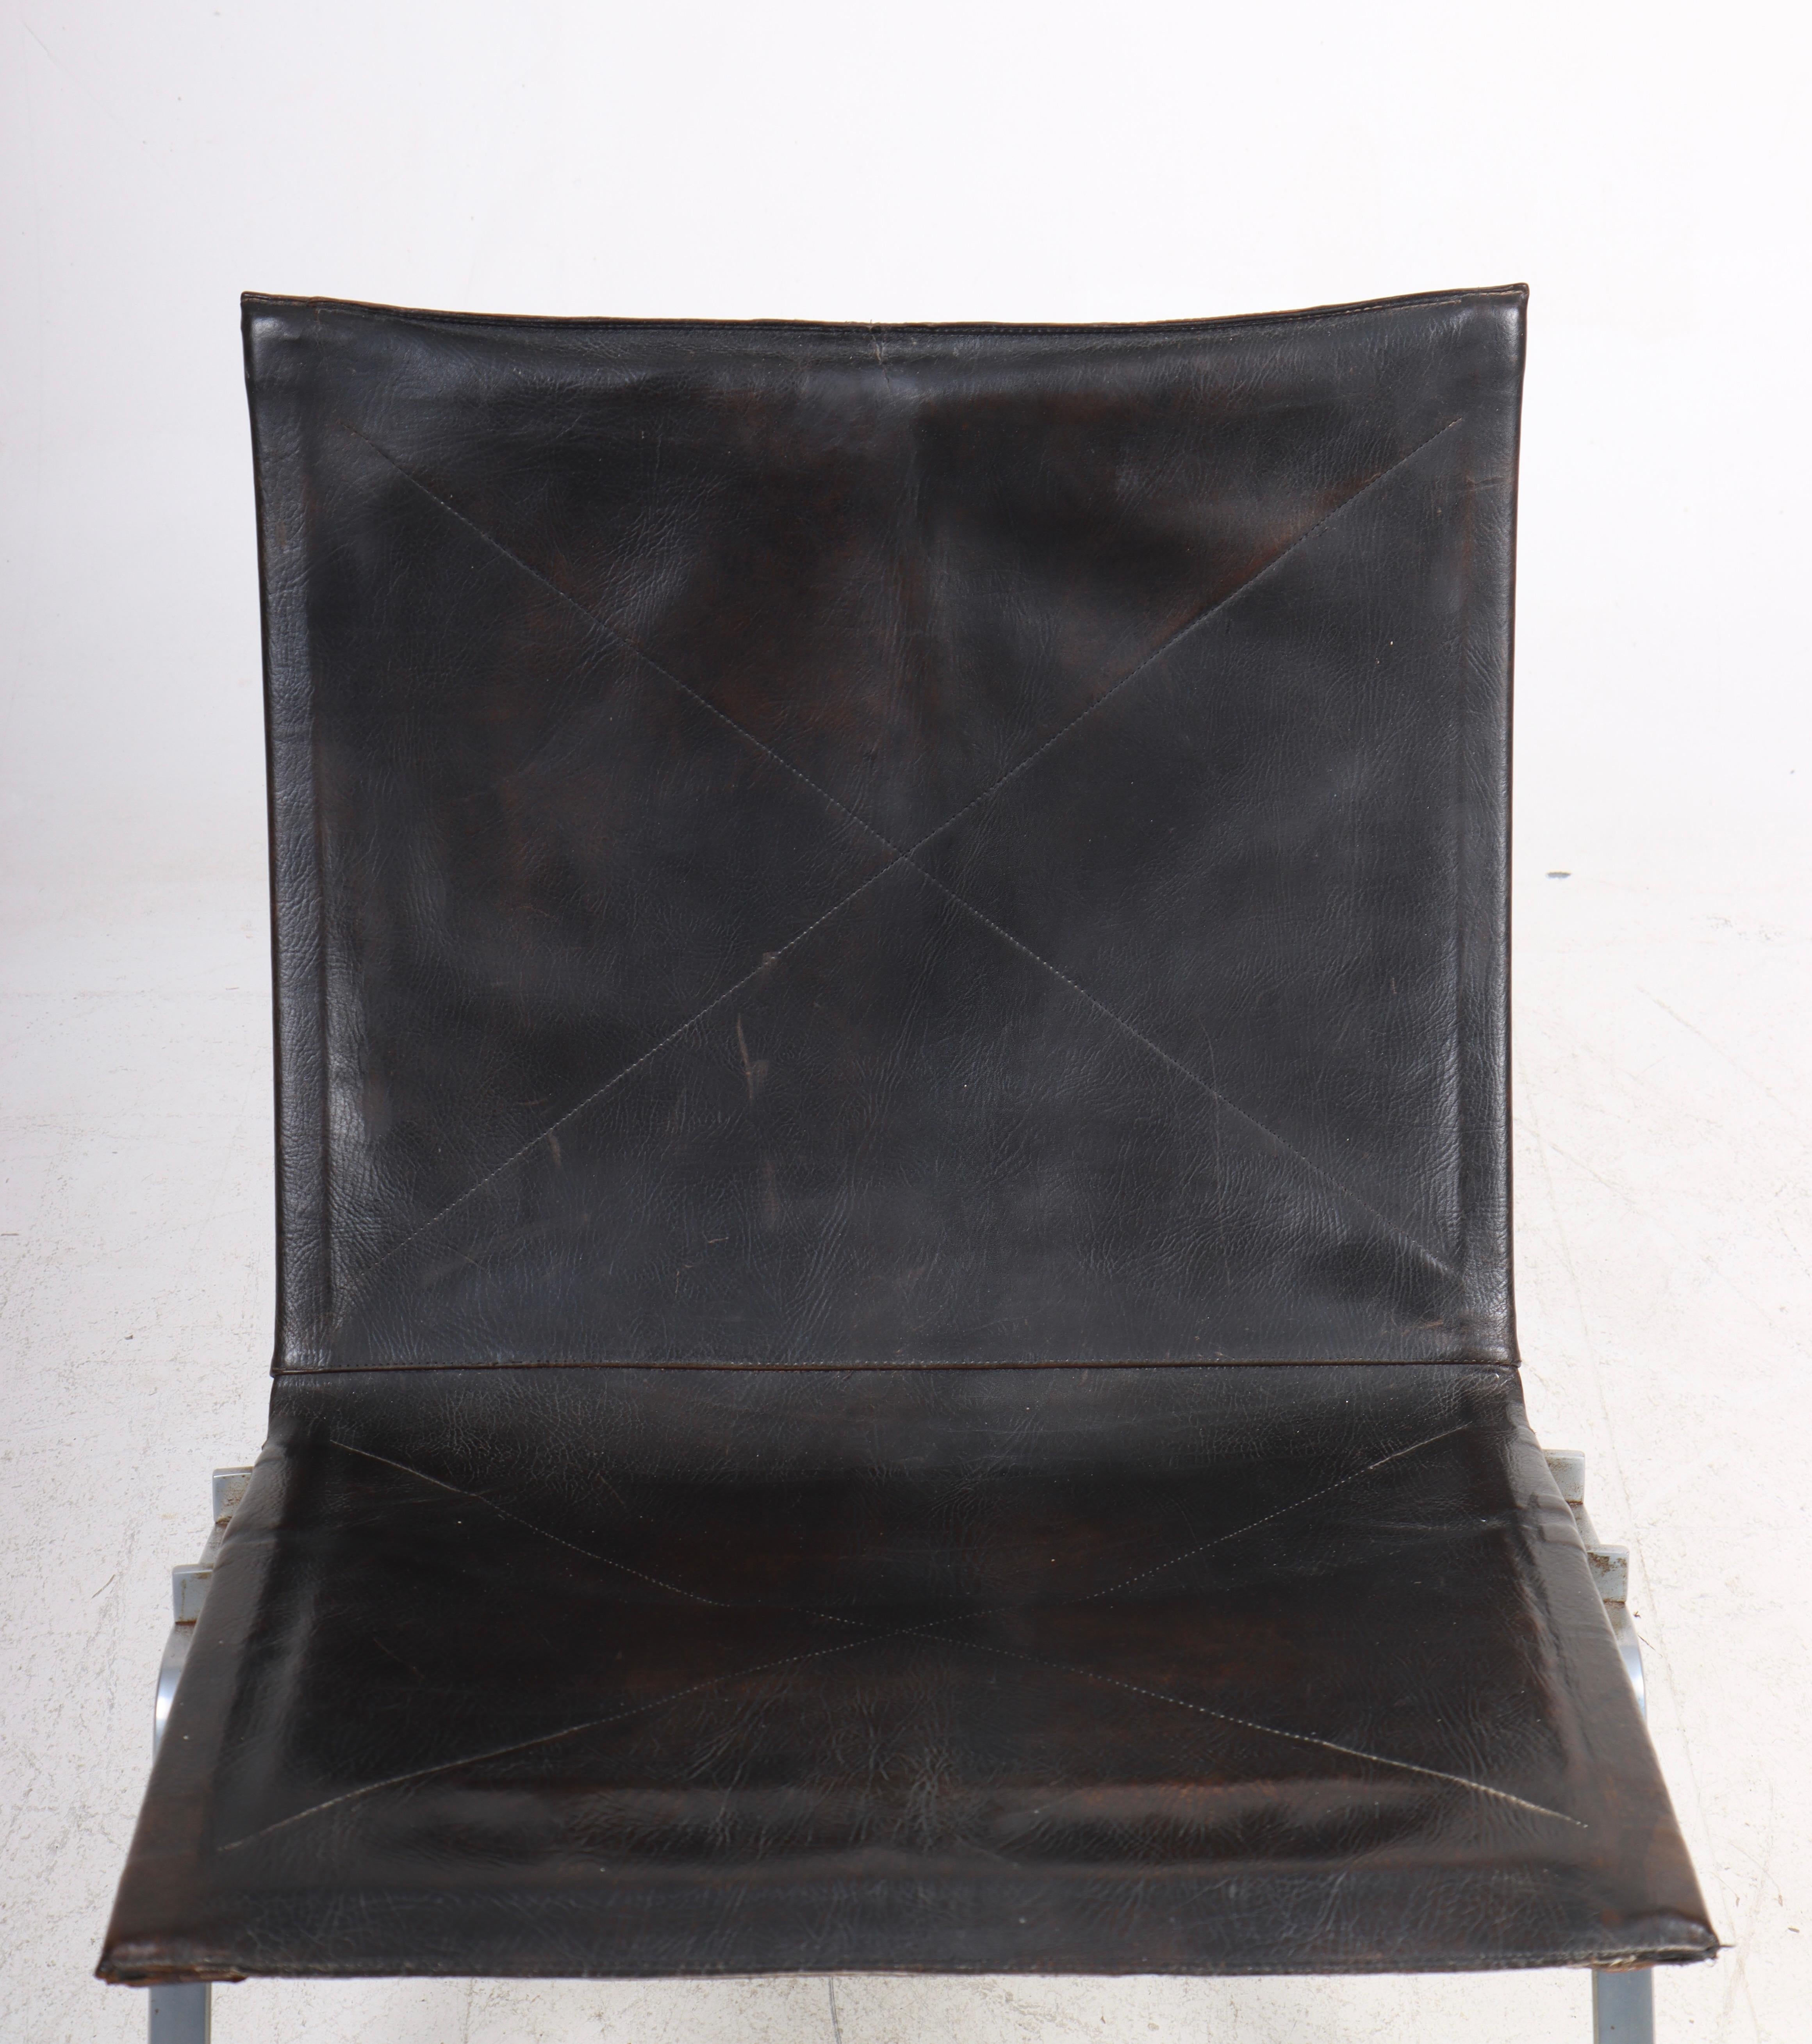 Superbe fauteuil de salon PK22 en cuir patiné. Conçu par Maa. Poul Kjærholm pour Kold Christensen. Fabriqué au Danemark. Etat original.